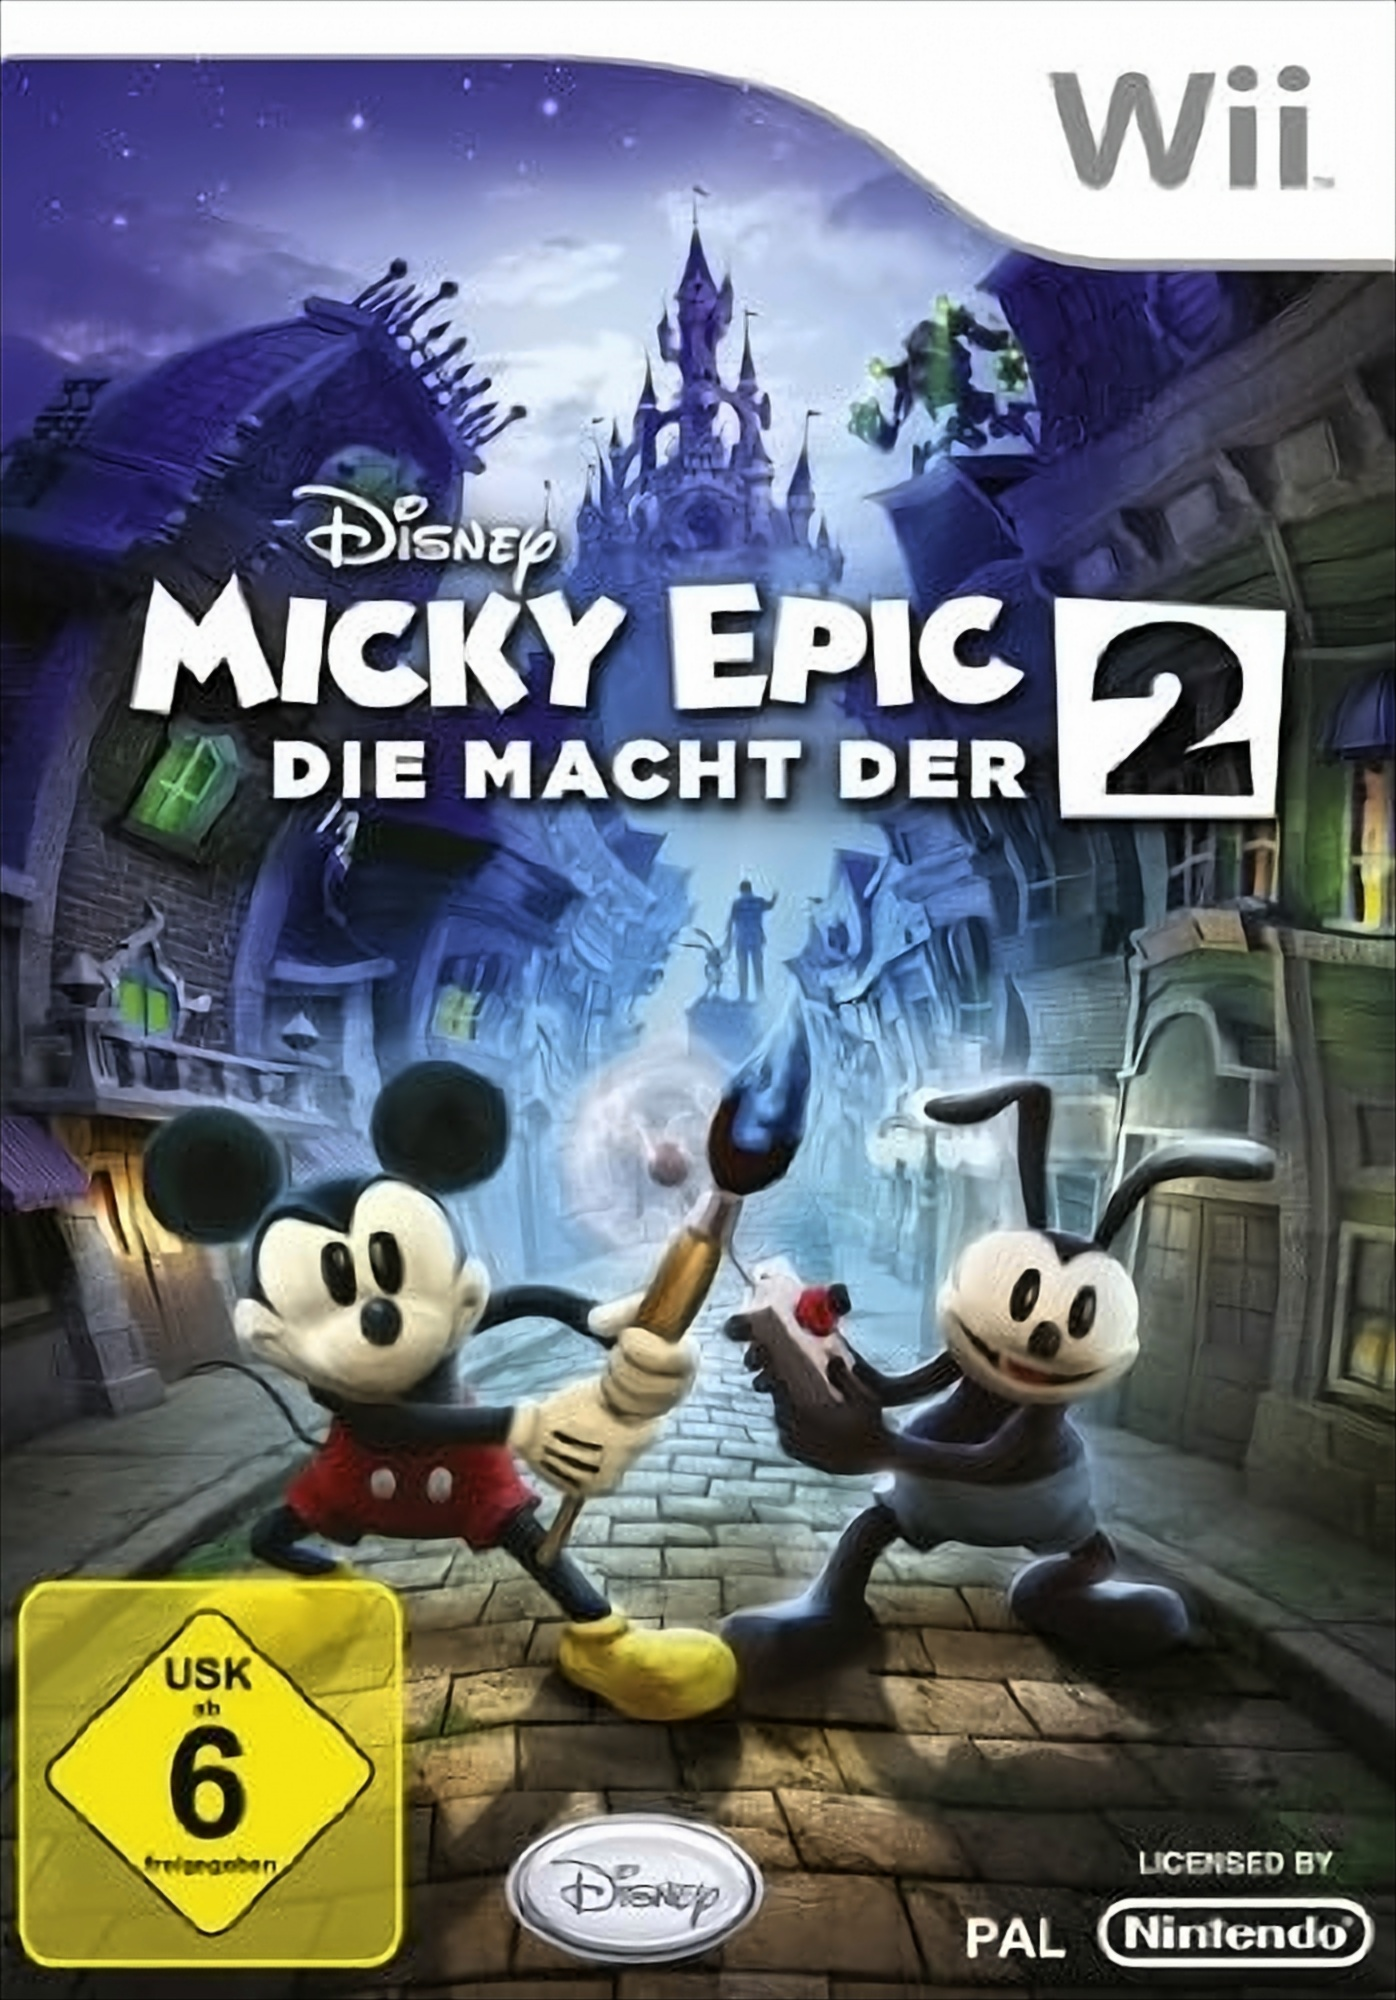 der Disney - [Nintendo Micky Epic: 2 Wii] Die Macht